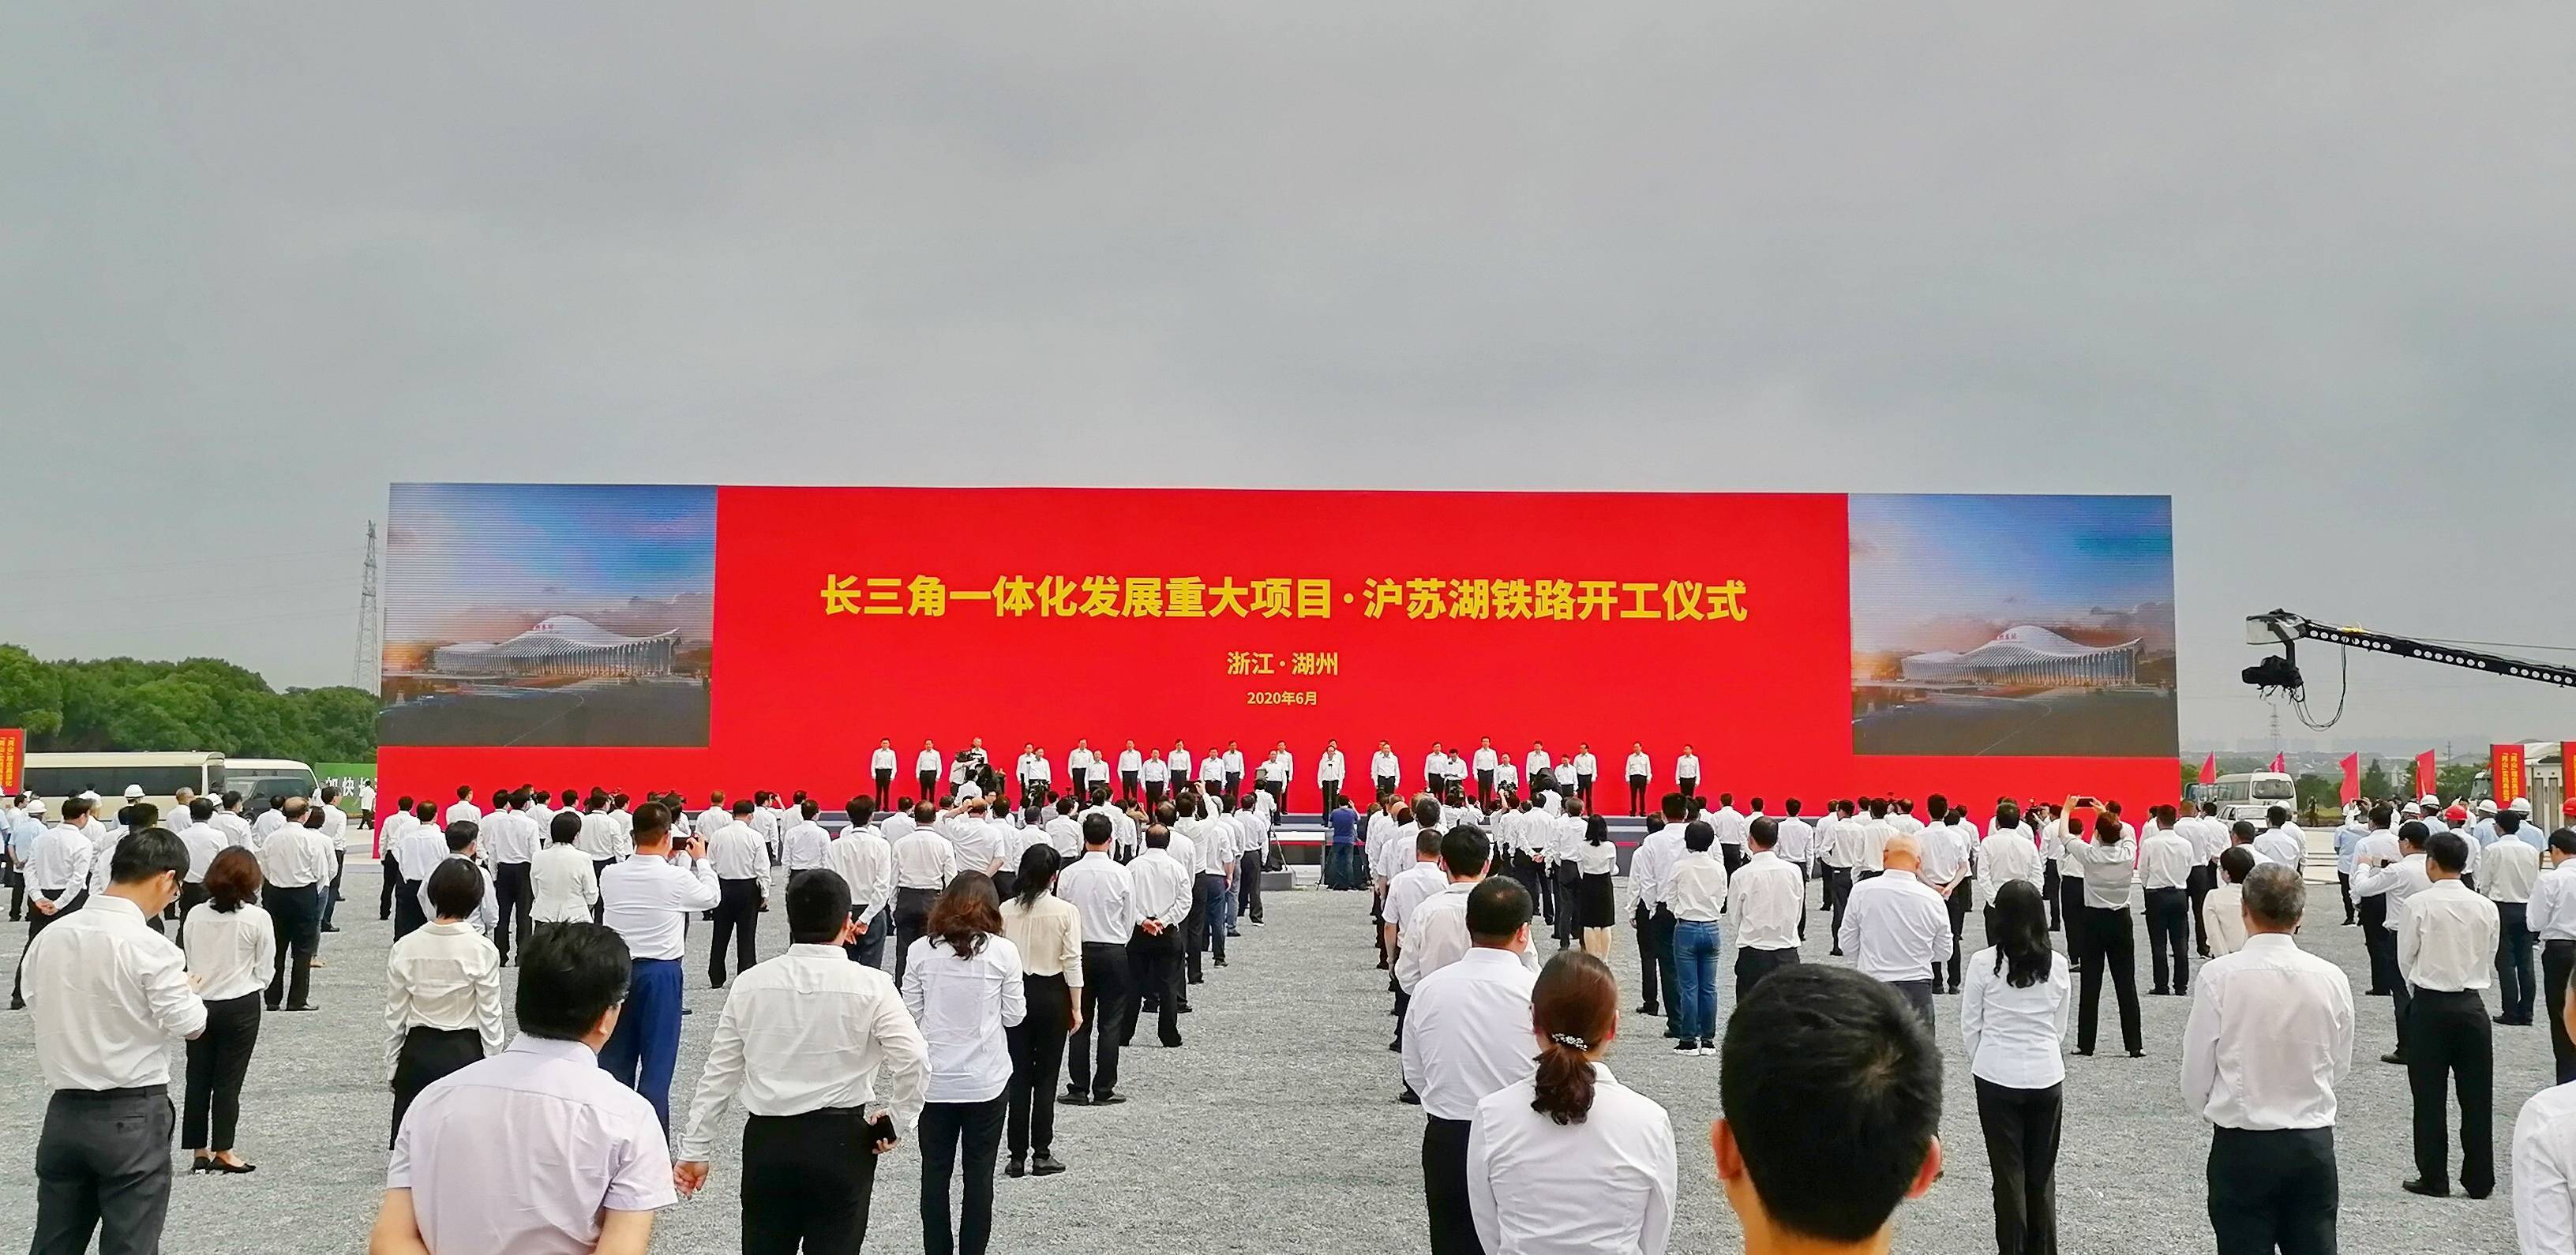 快讯沪苏湖铁路开工仪式在吴兴区举行